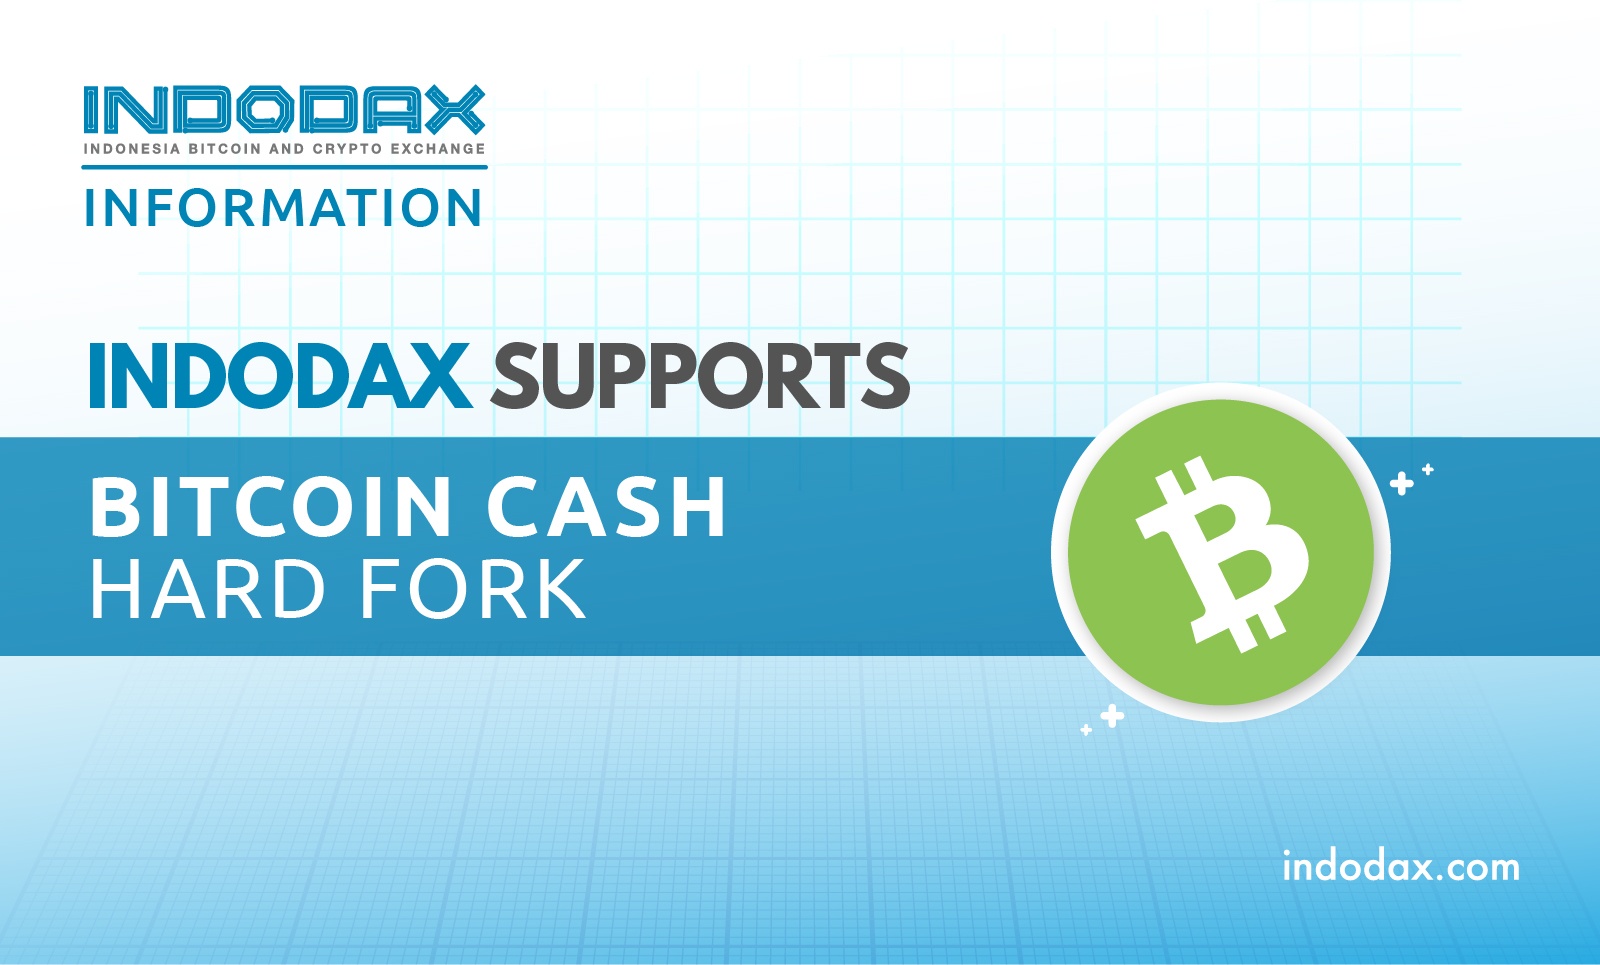 Indodax Support Bitcoin Cash Hardfork